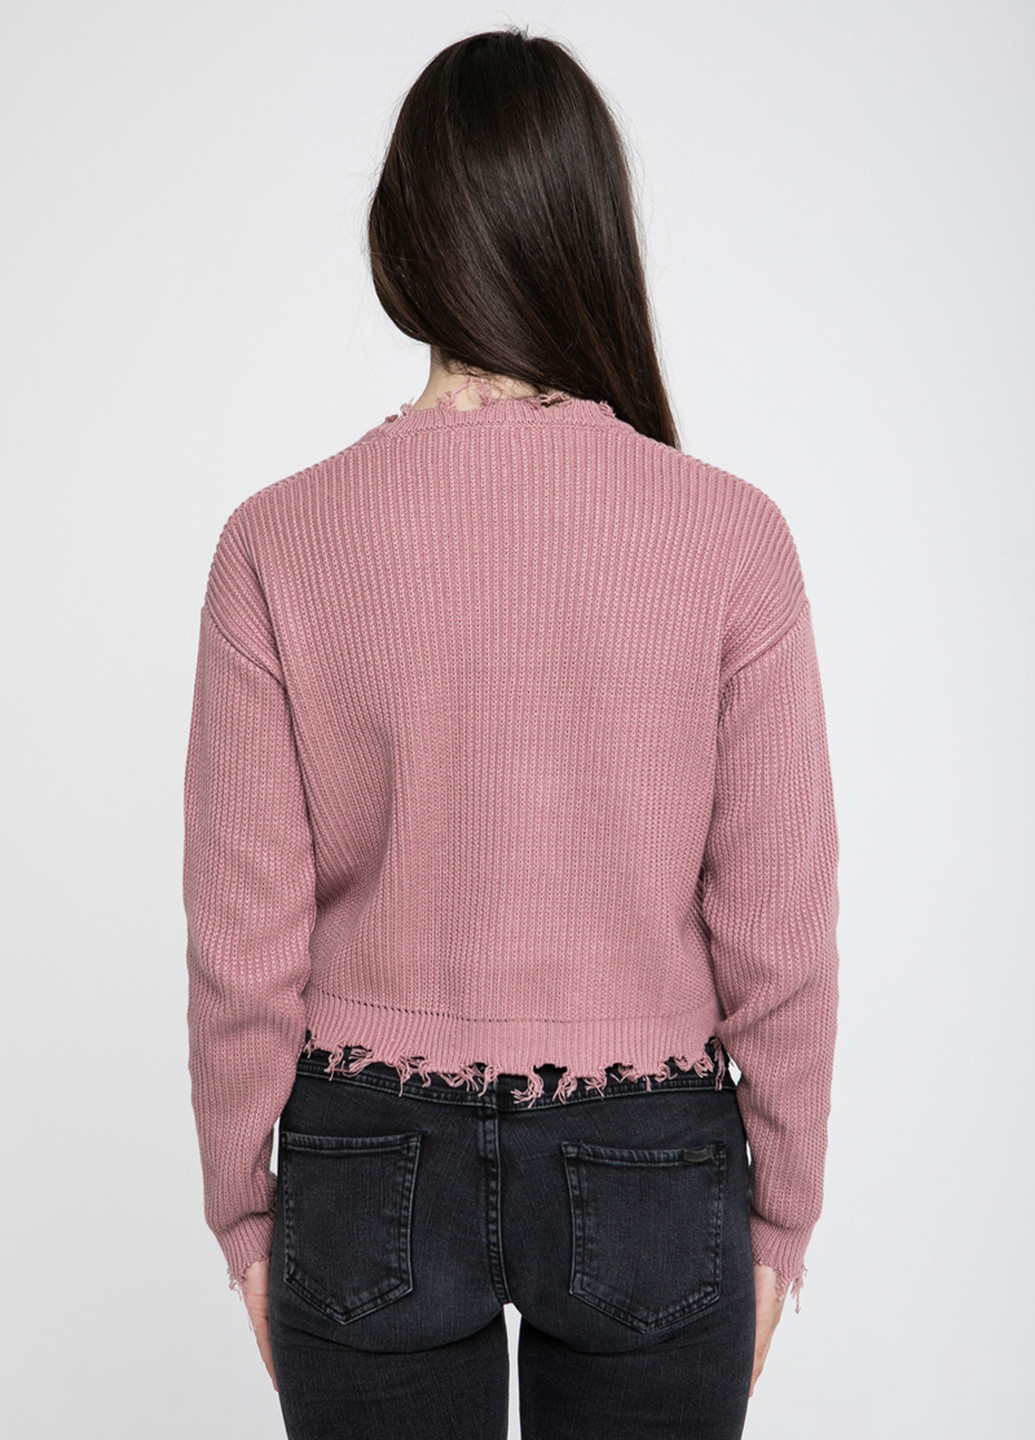 Темно-розовый демисезонный пуловер пуловер Sewel